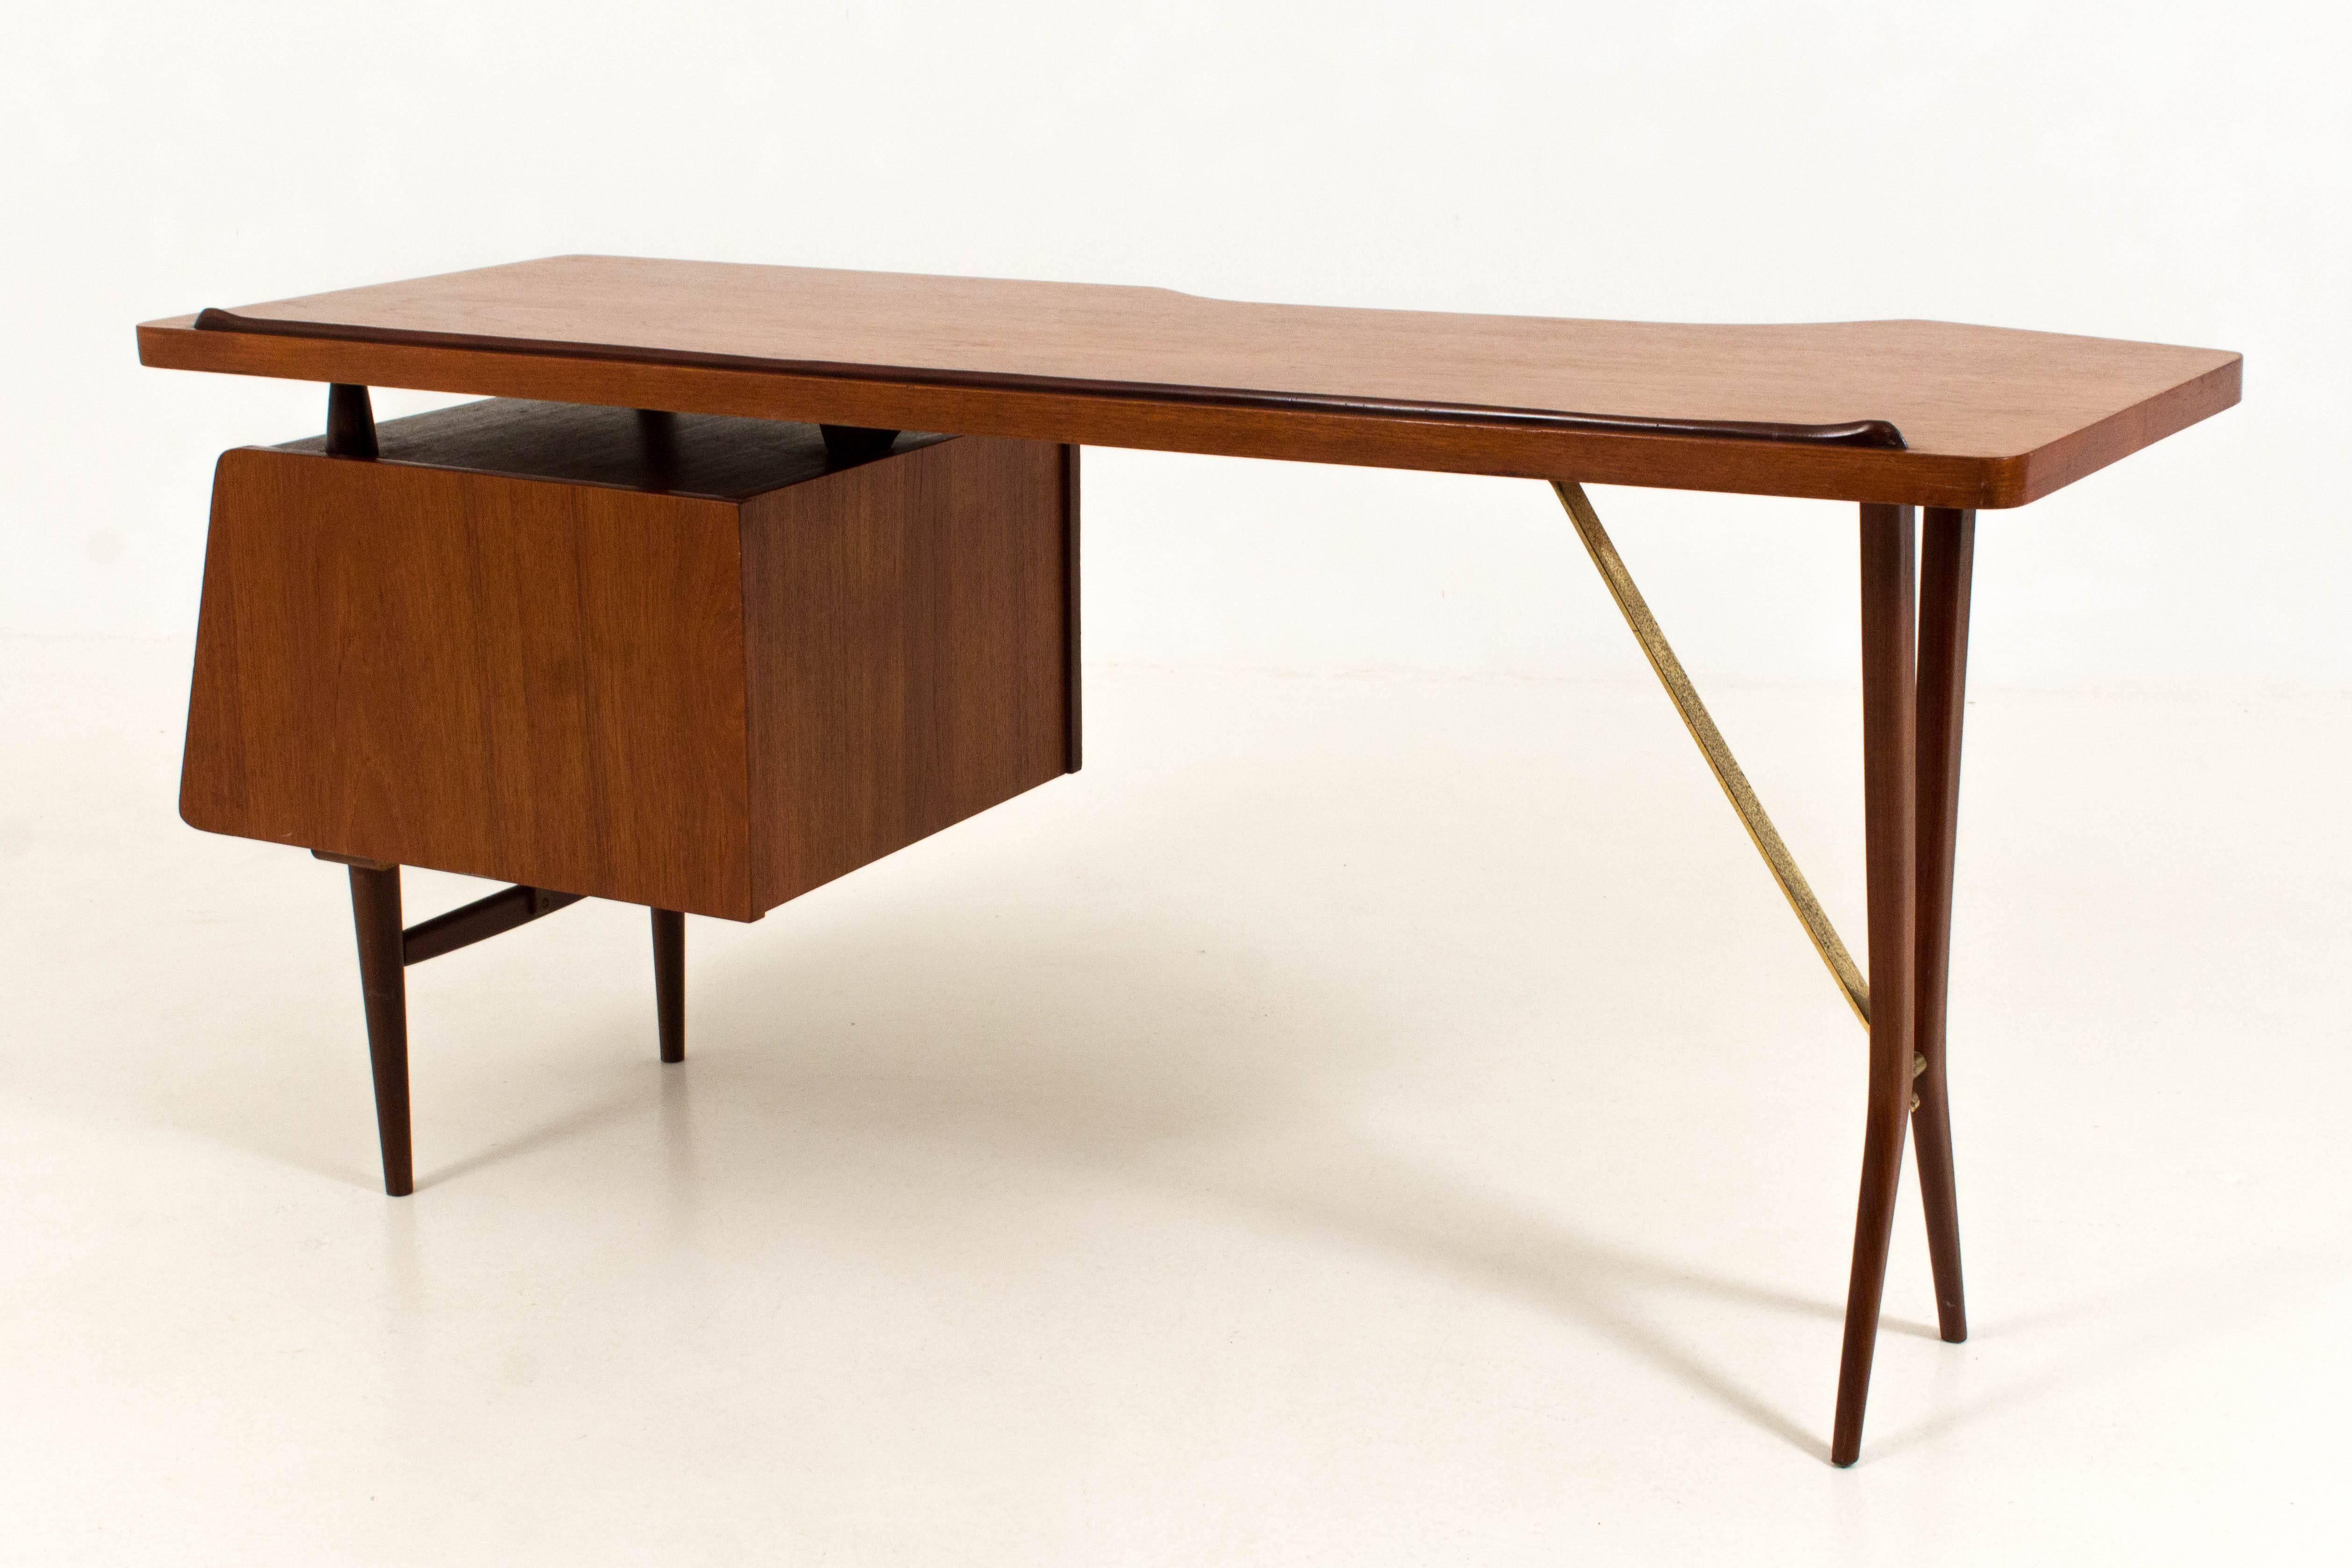 Brass Iconic Mid-Century Modern Desk by Louis Van Teeffelen for Webe, 1959